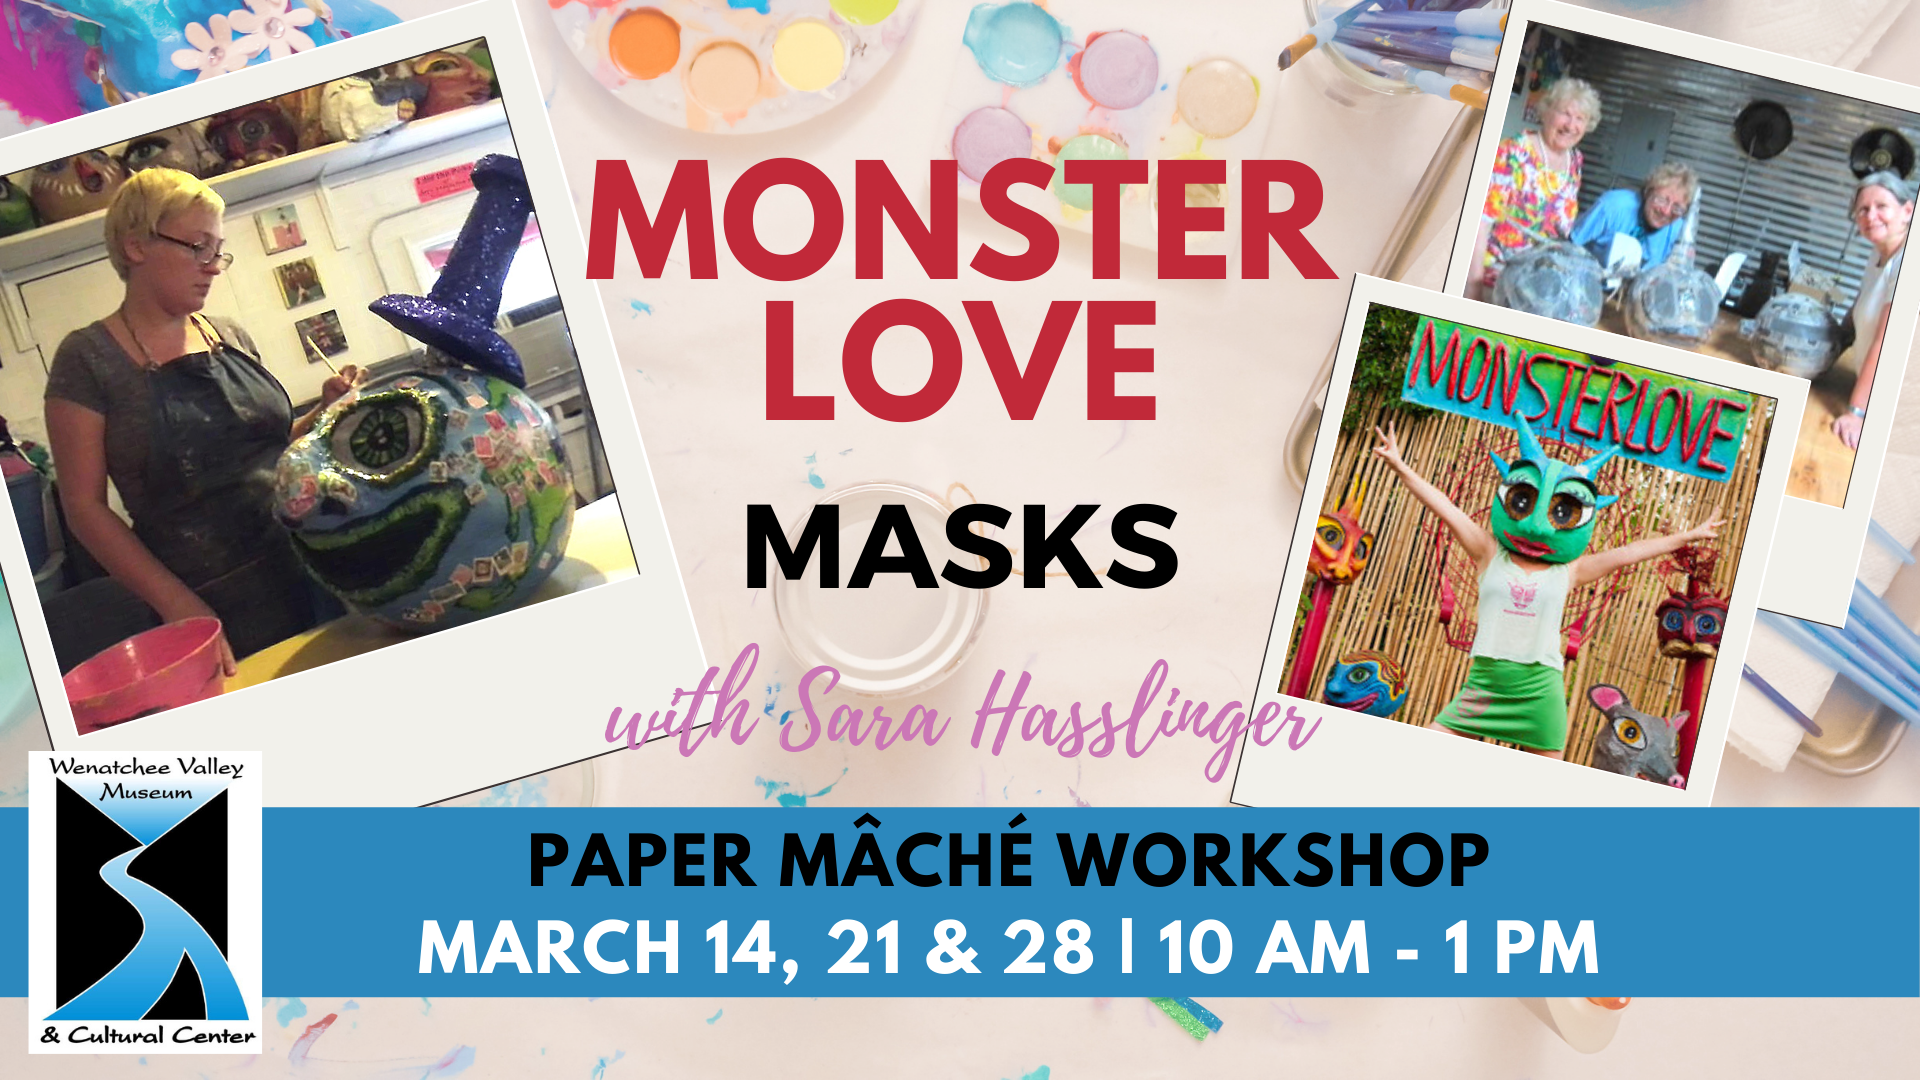 MonsterLove: Masks